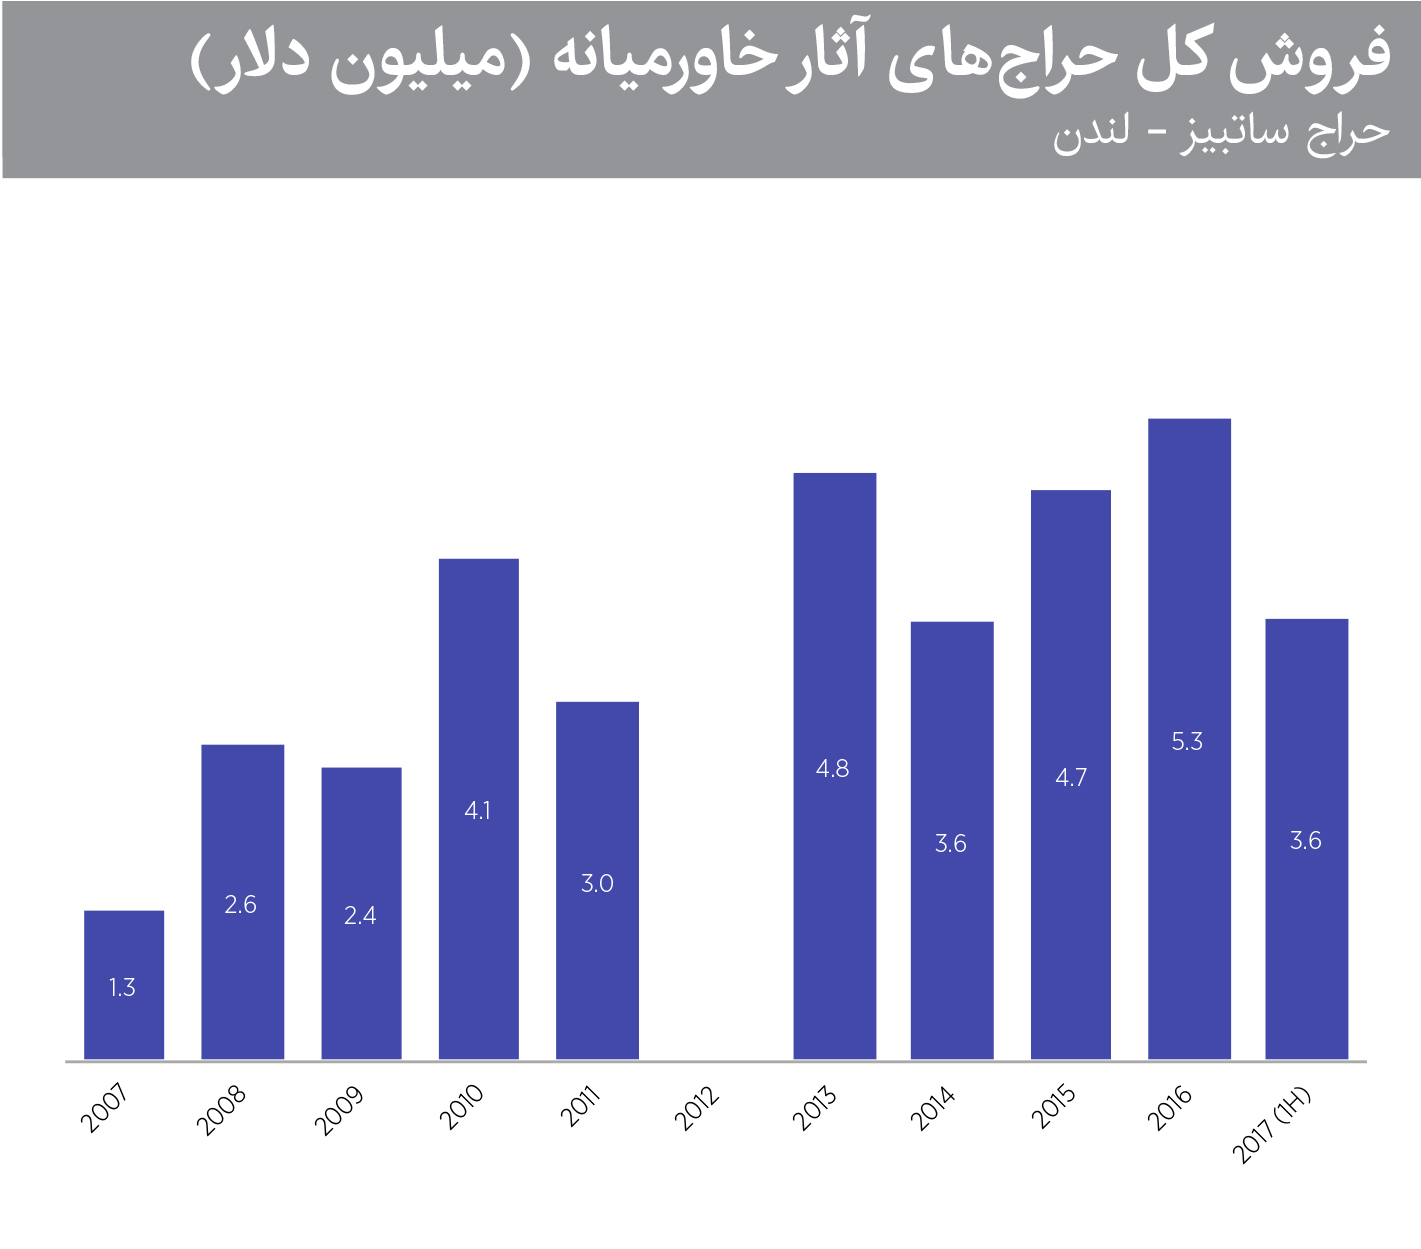 فروش کل آثار هنری خاورمیانه در حراج ساتبیز از سال 2007 تا 2017